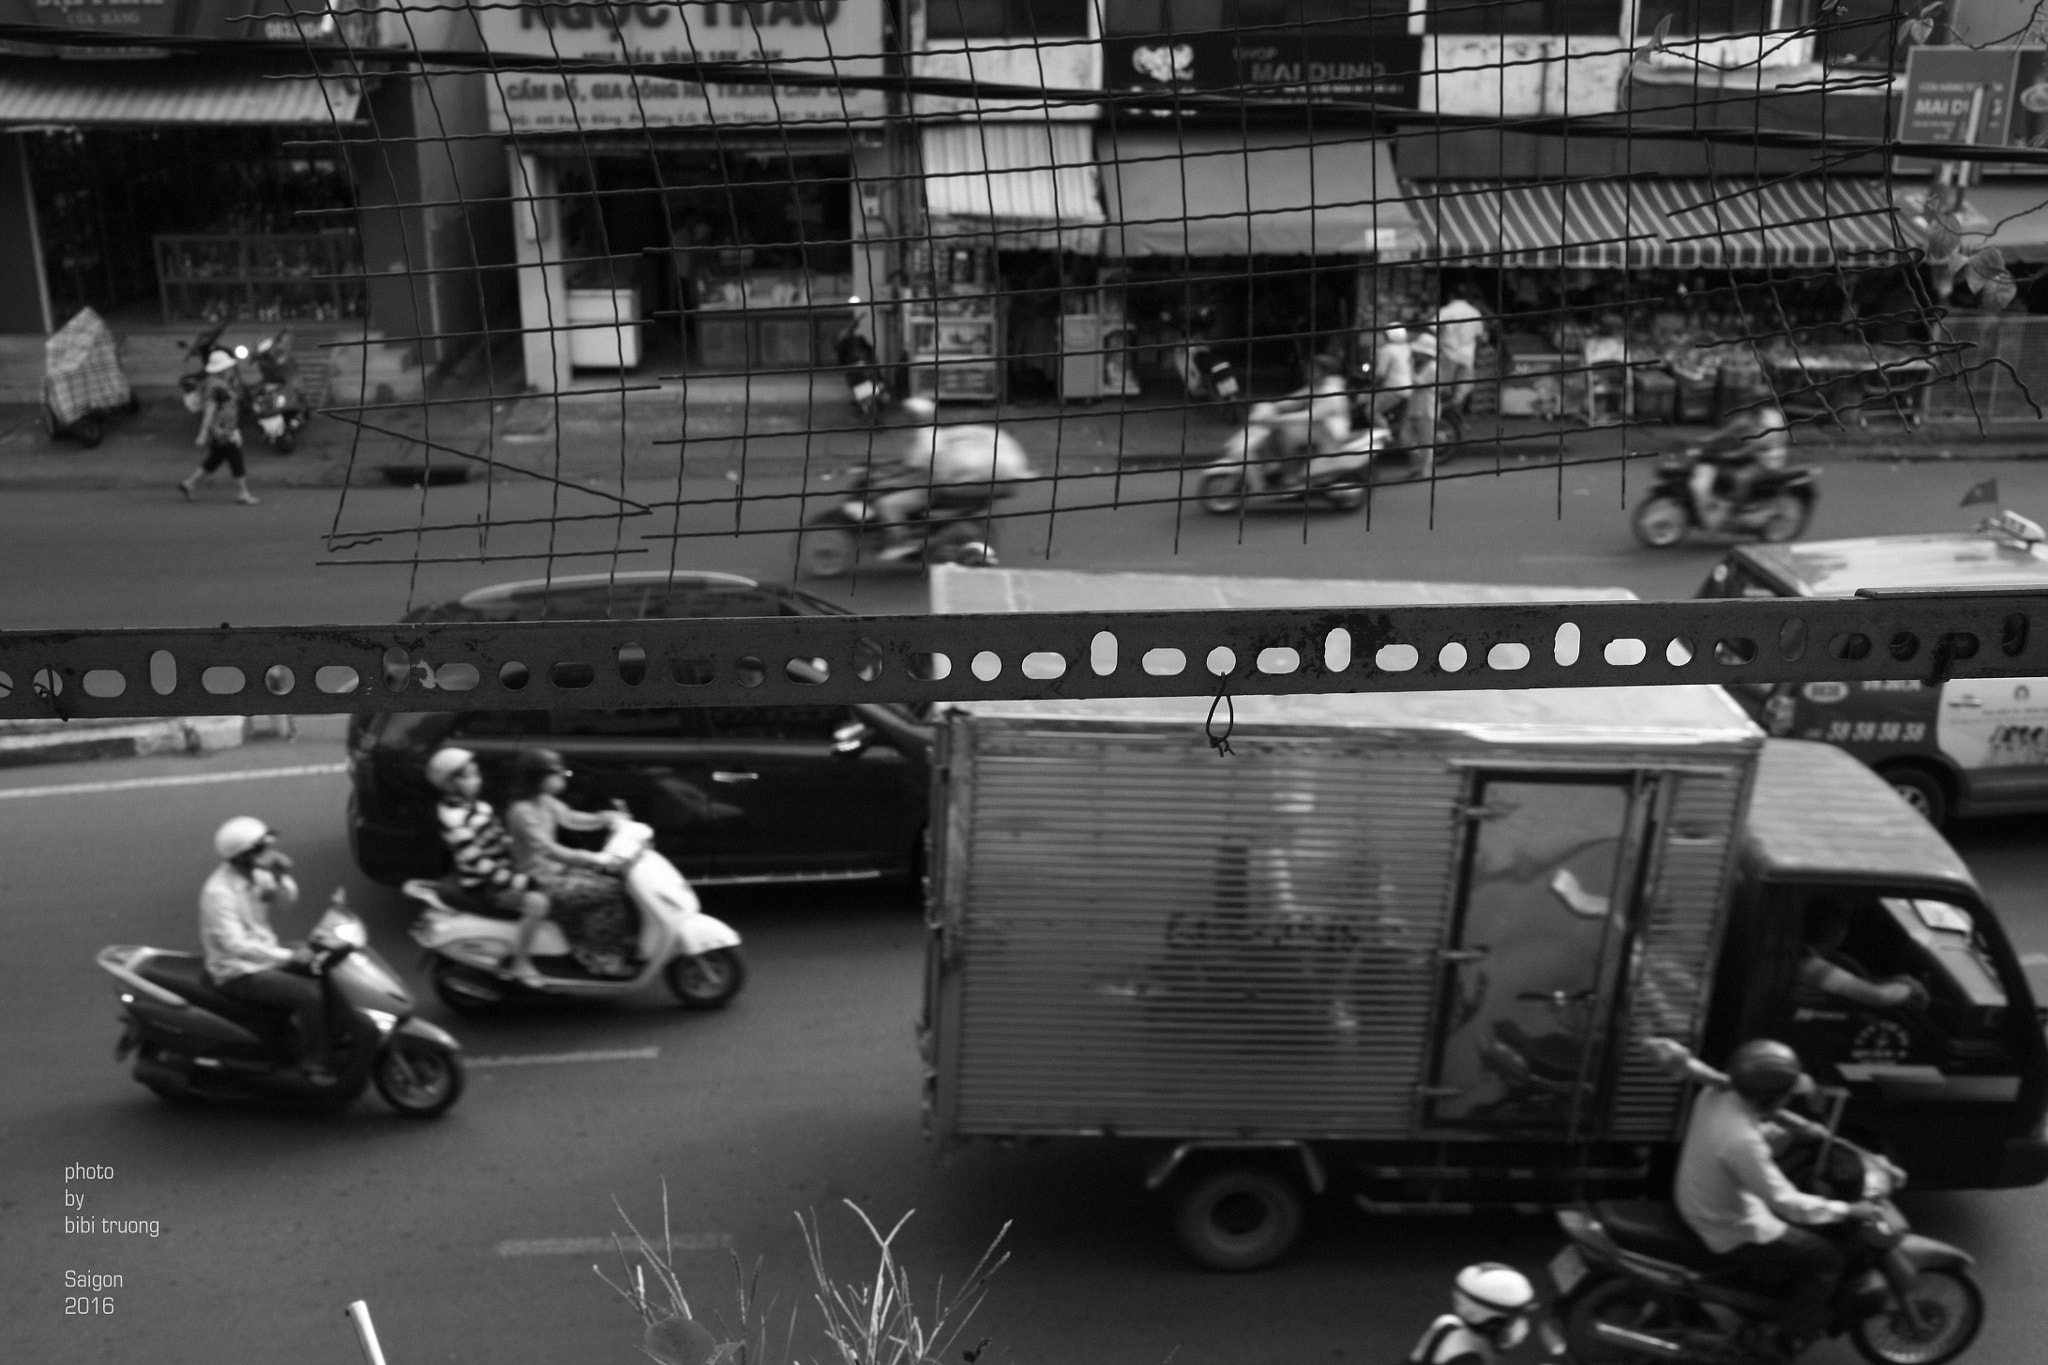 Canon EOS 5D + Canon EF 35mm F2 sample photo. Saigon photography